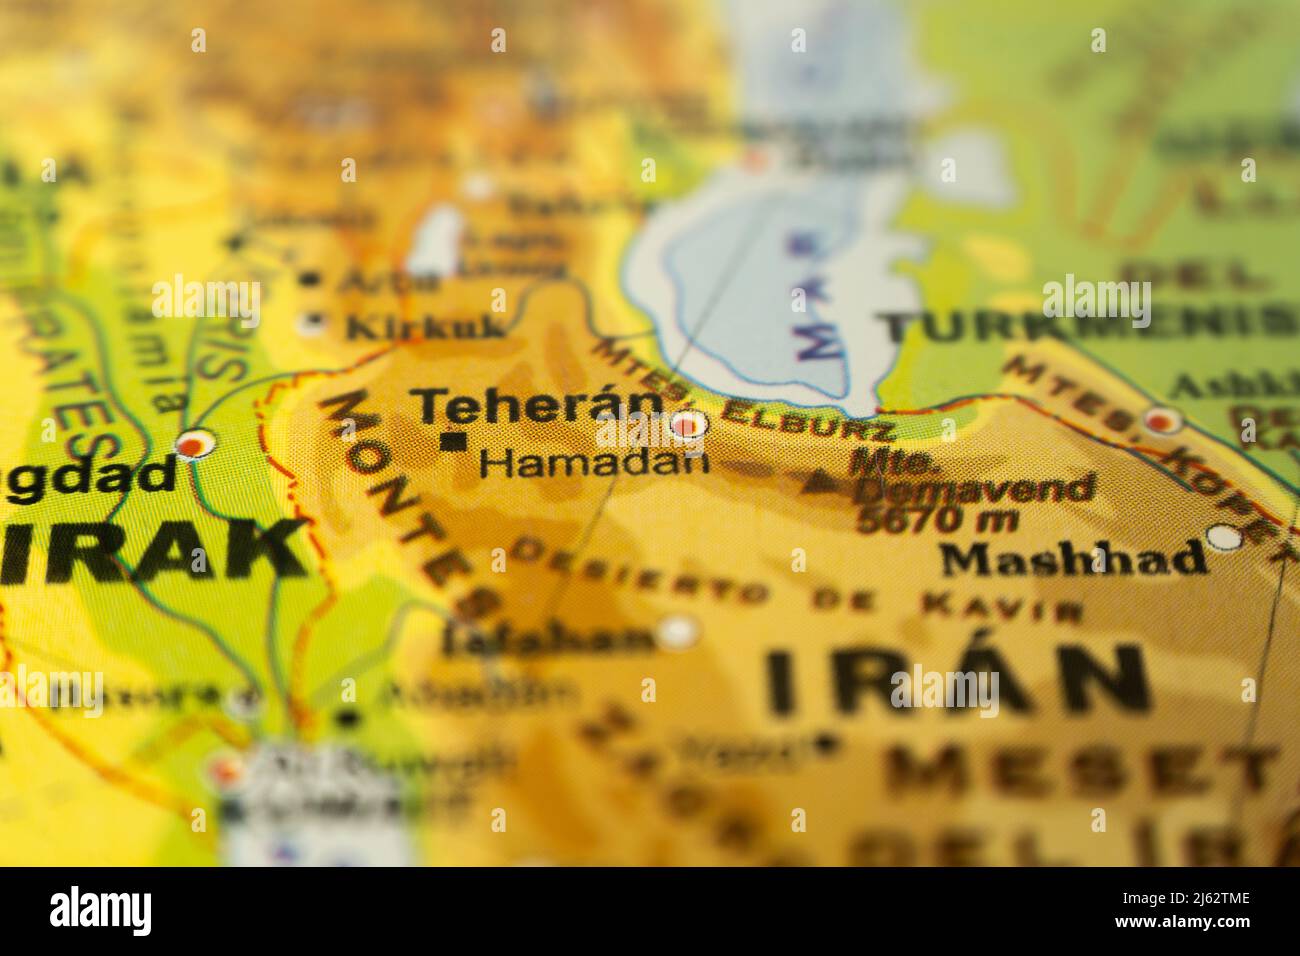 Primer plano del mapa orográfico de Irán con Teherán como centro, con referencias en inglés. Concepto de cartografía, viajes, turismo, geografía. El tipo de Foto de stock